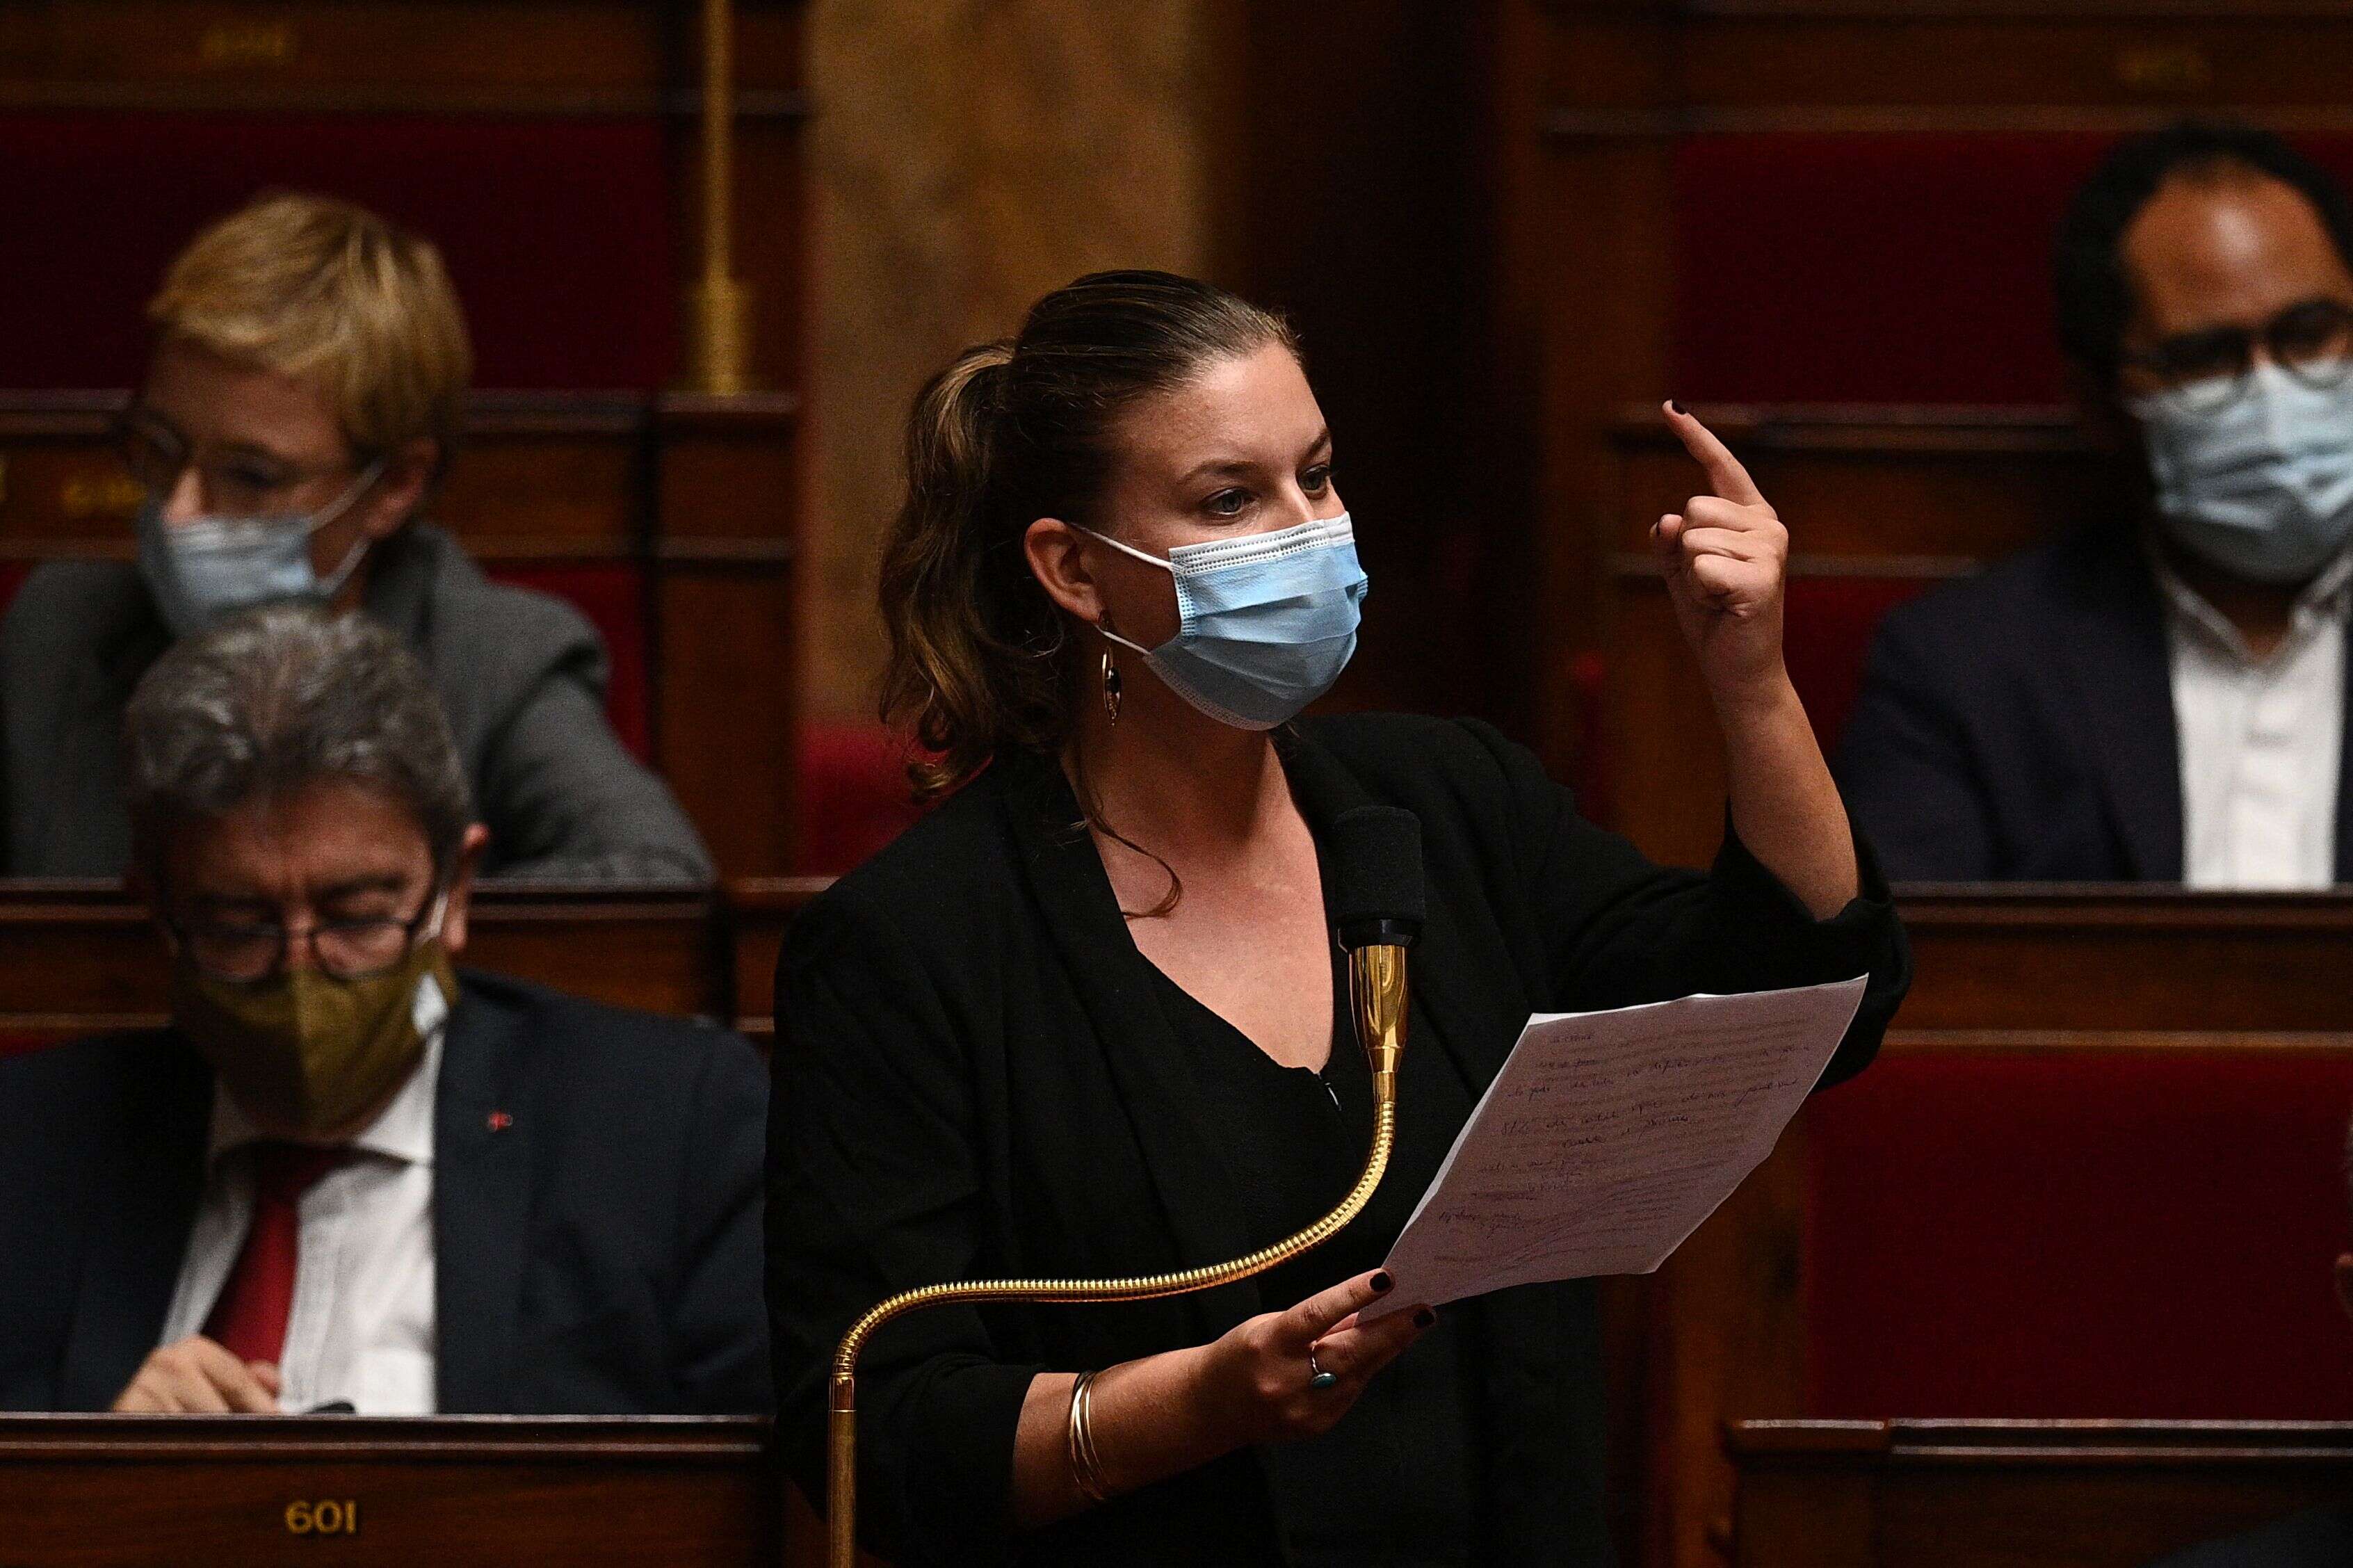 La députée insoumise Mathilde Panot, ici photographiée à l'Assemblée nationale en octobre dernier, s'est attirée les foudres de la SNCF et notamment d'employés de l'entreprise ferroviaire après avoir évoqué de futurs contrôles au faciès.